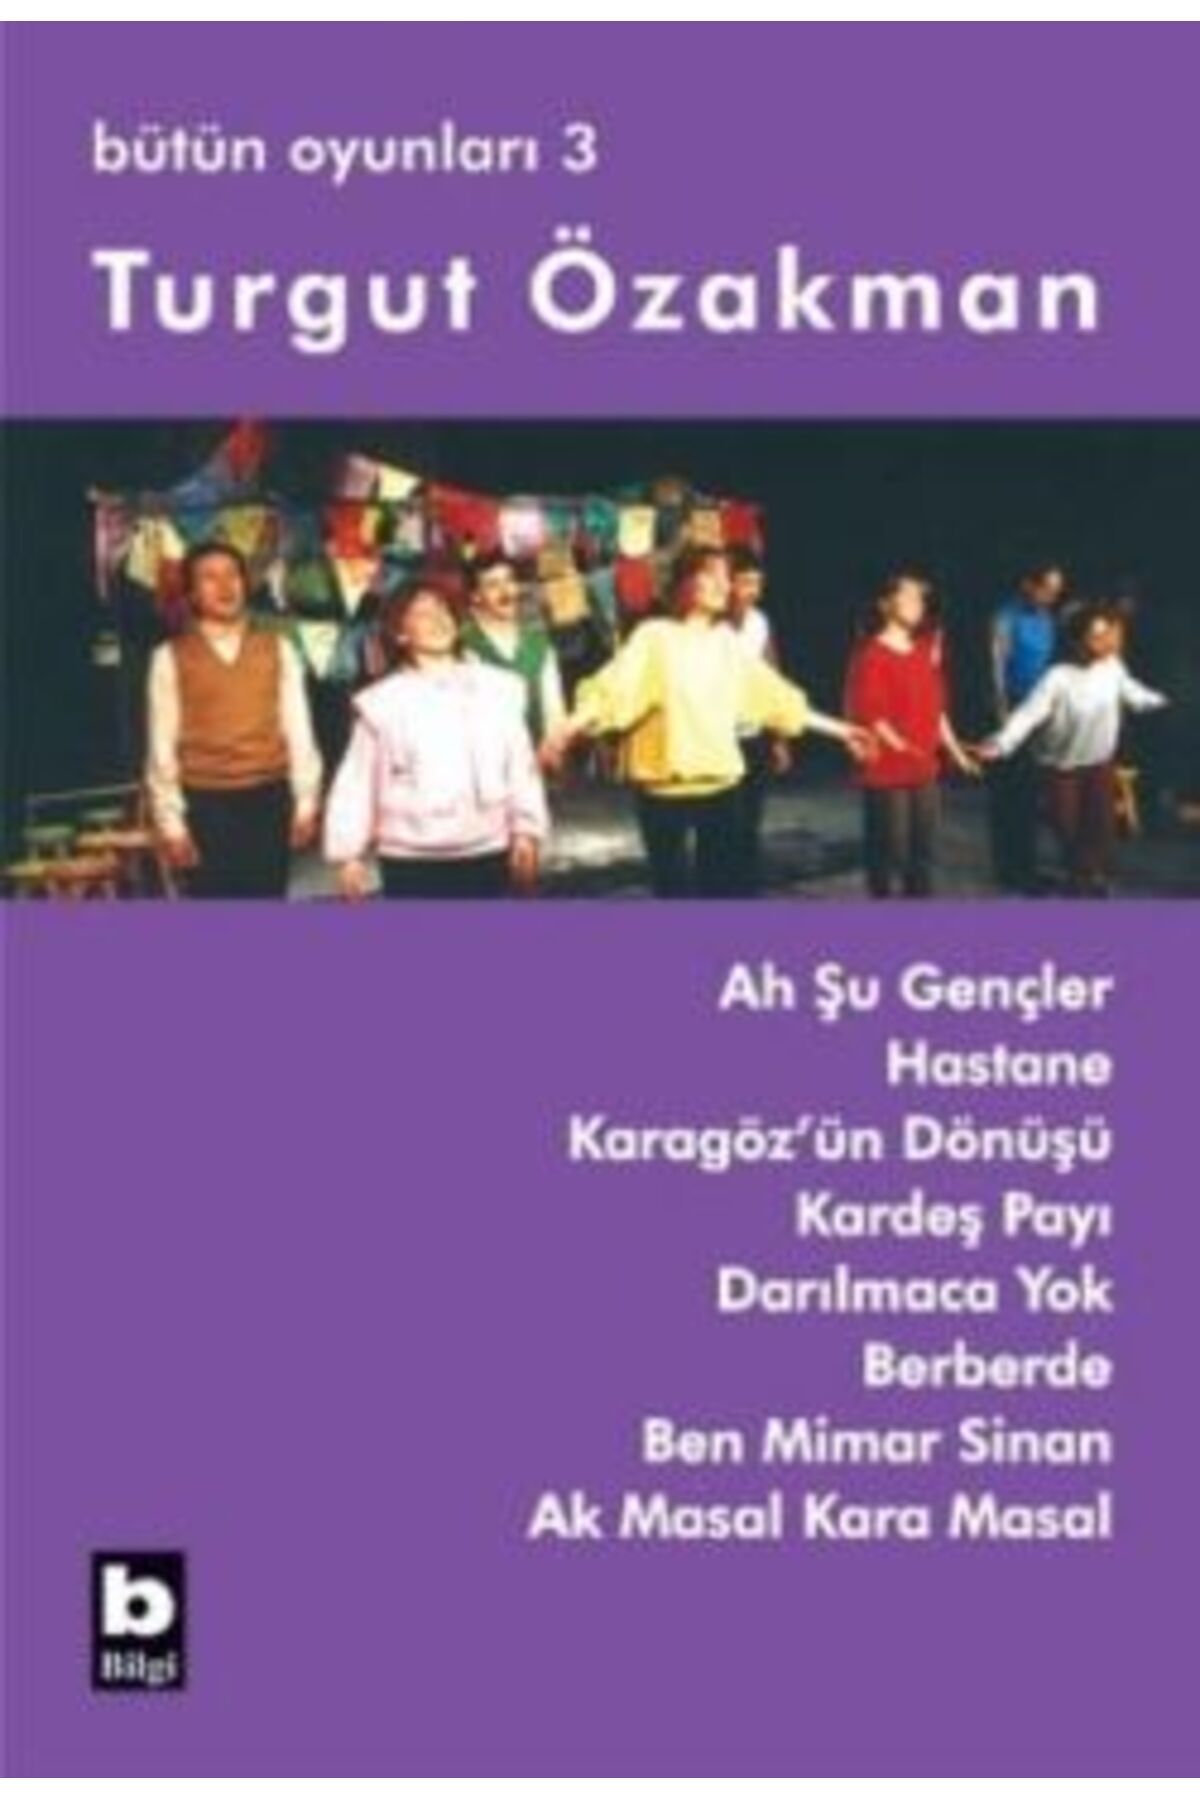 Bilgi Yayınları Turgut Özakman Bütün Oyunları 3 (AH ŞU GENÇLER, HASTANE, ...)